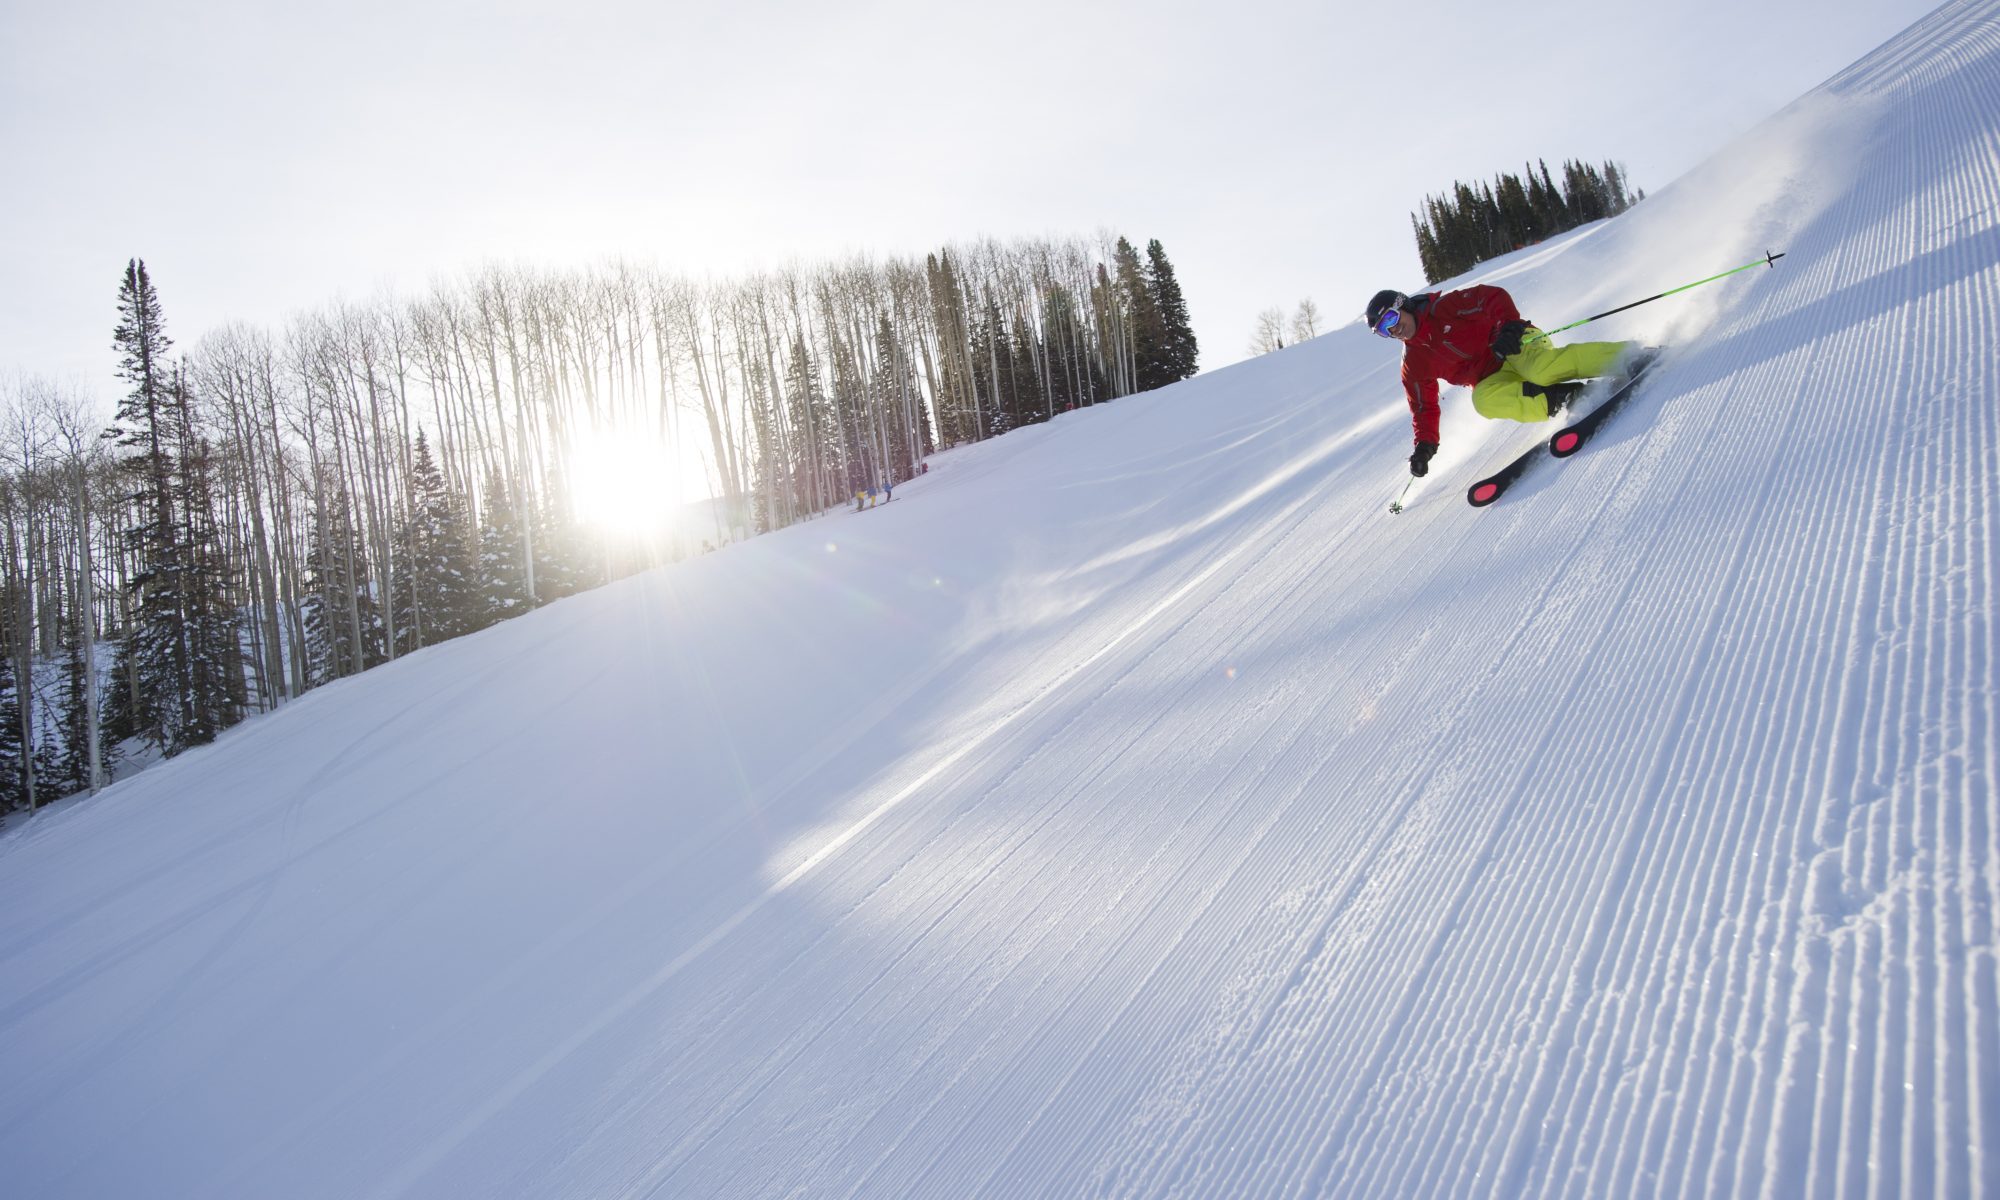 Matt Ross skiing at Aspen Resort, Aspen, Colorado. Aspen Snowmass. Aspen Snowmass Adds Another Bonus Weekend for Skiing and Riding.